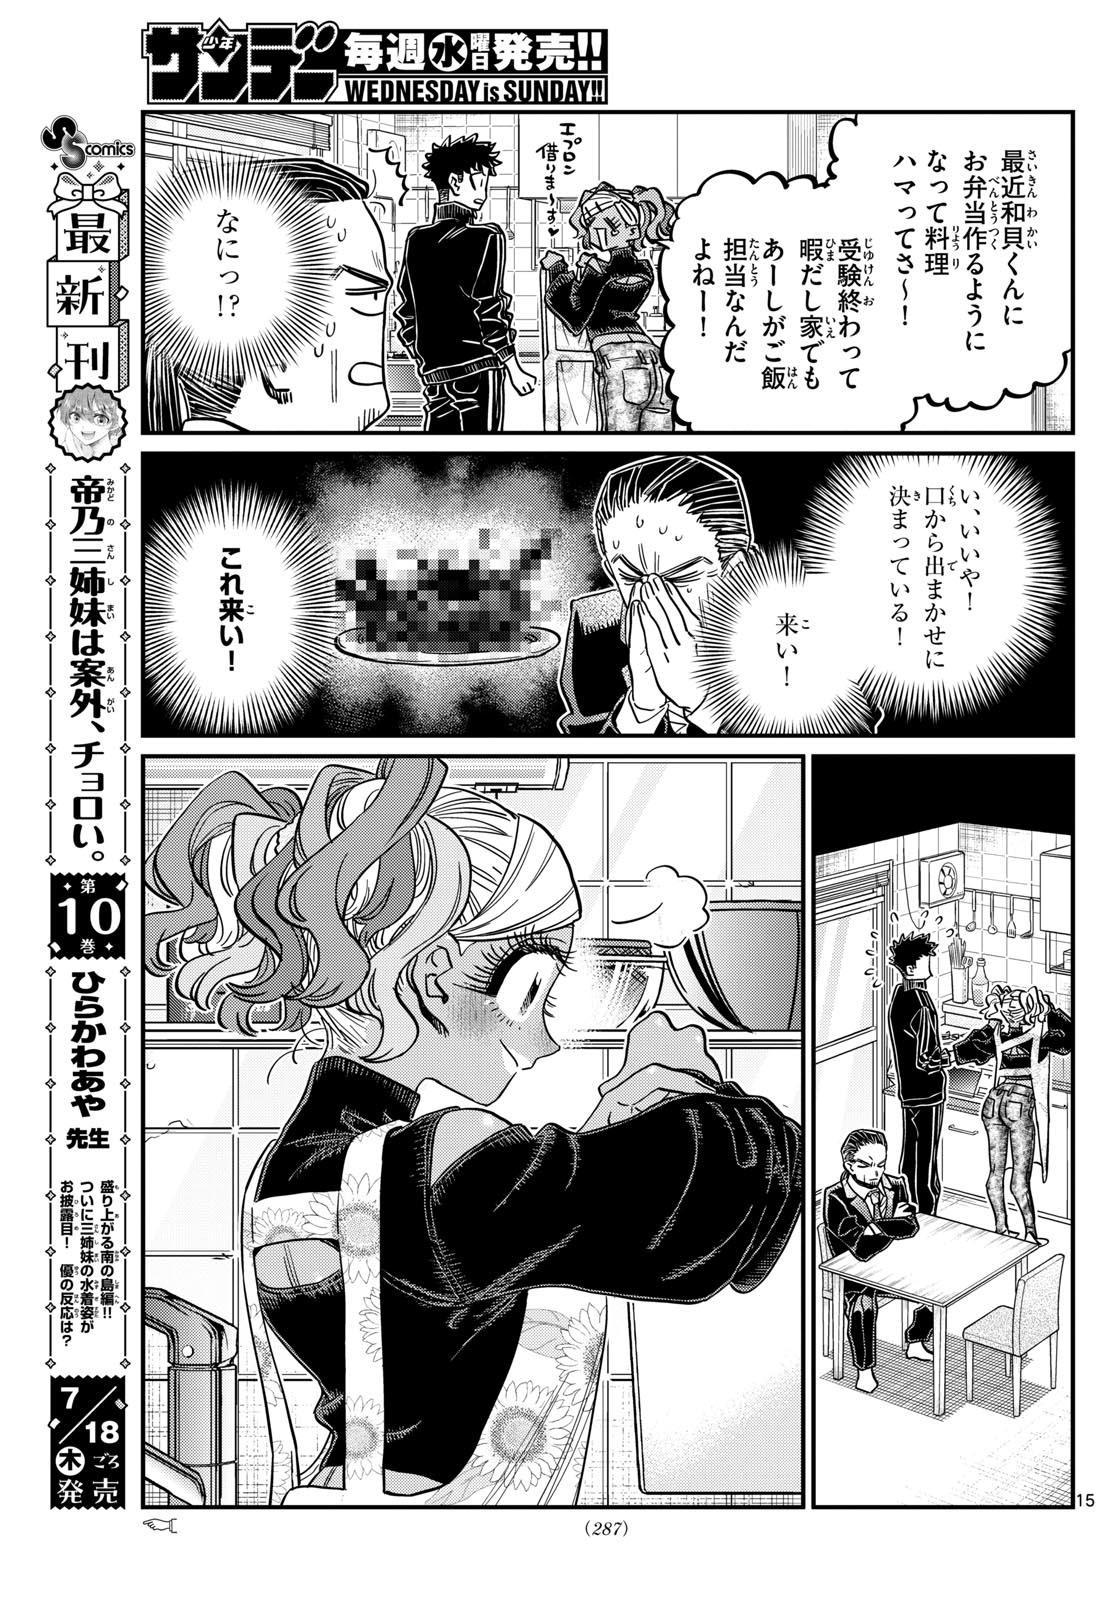 Komi-san wa Komyushou Desu - Chapter 469 - Page 5